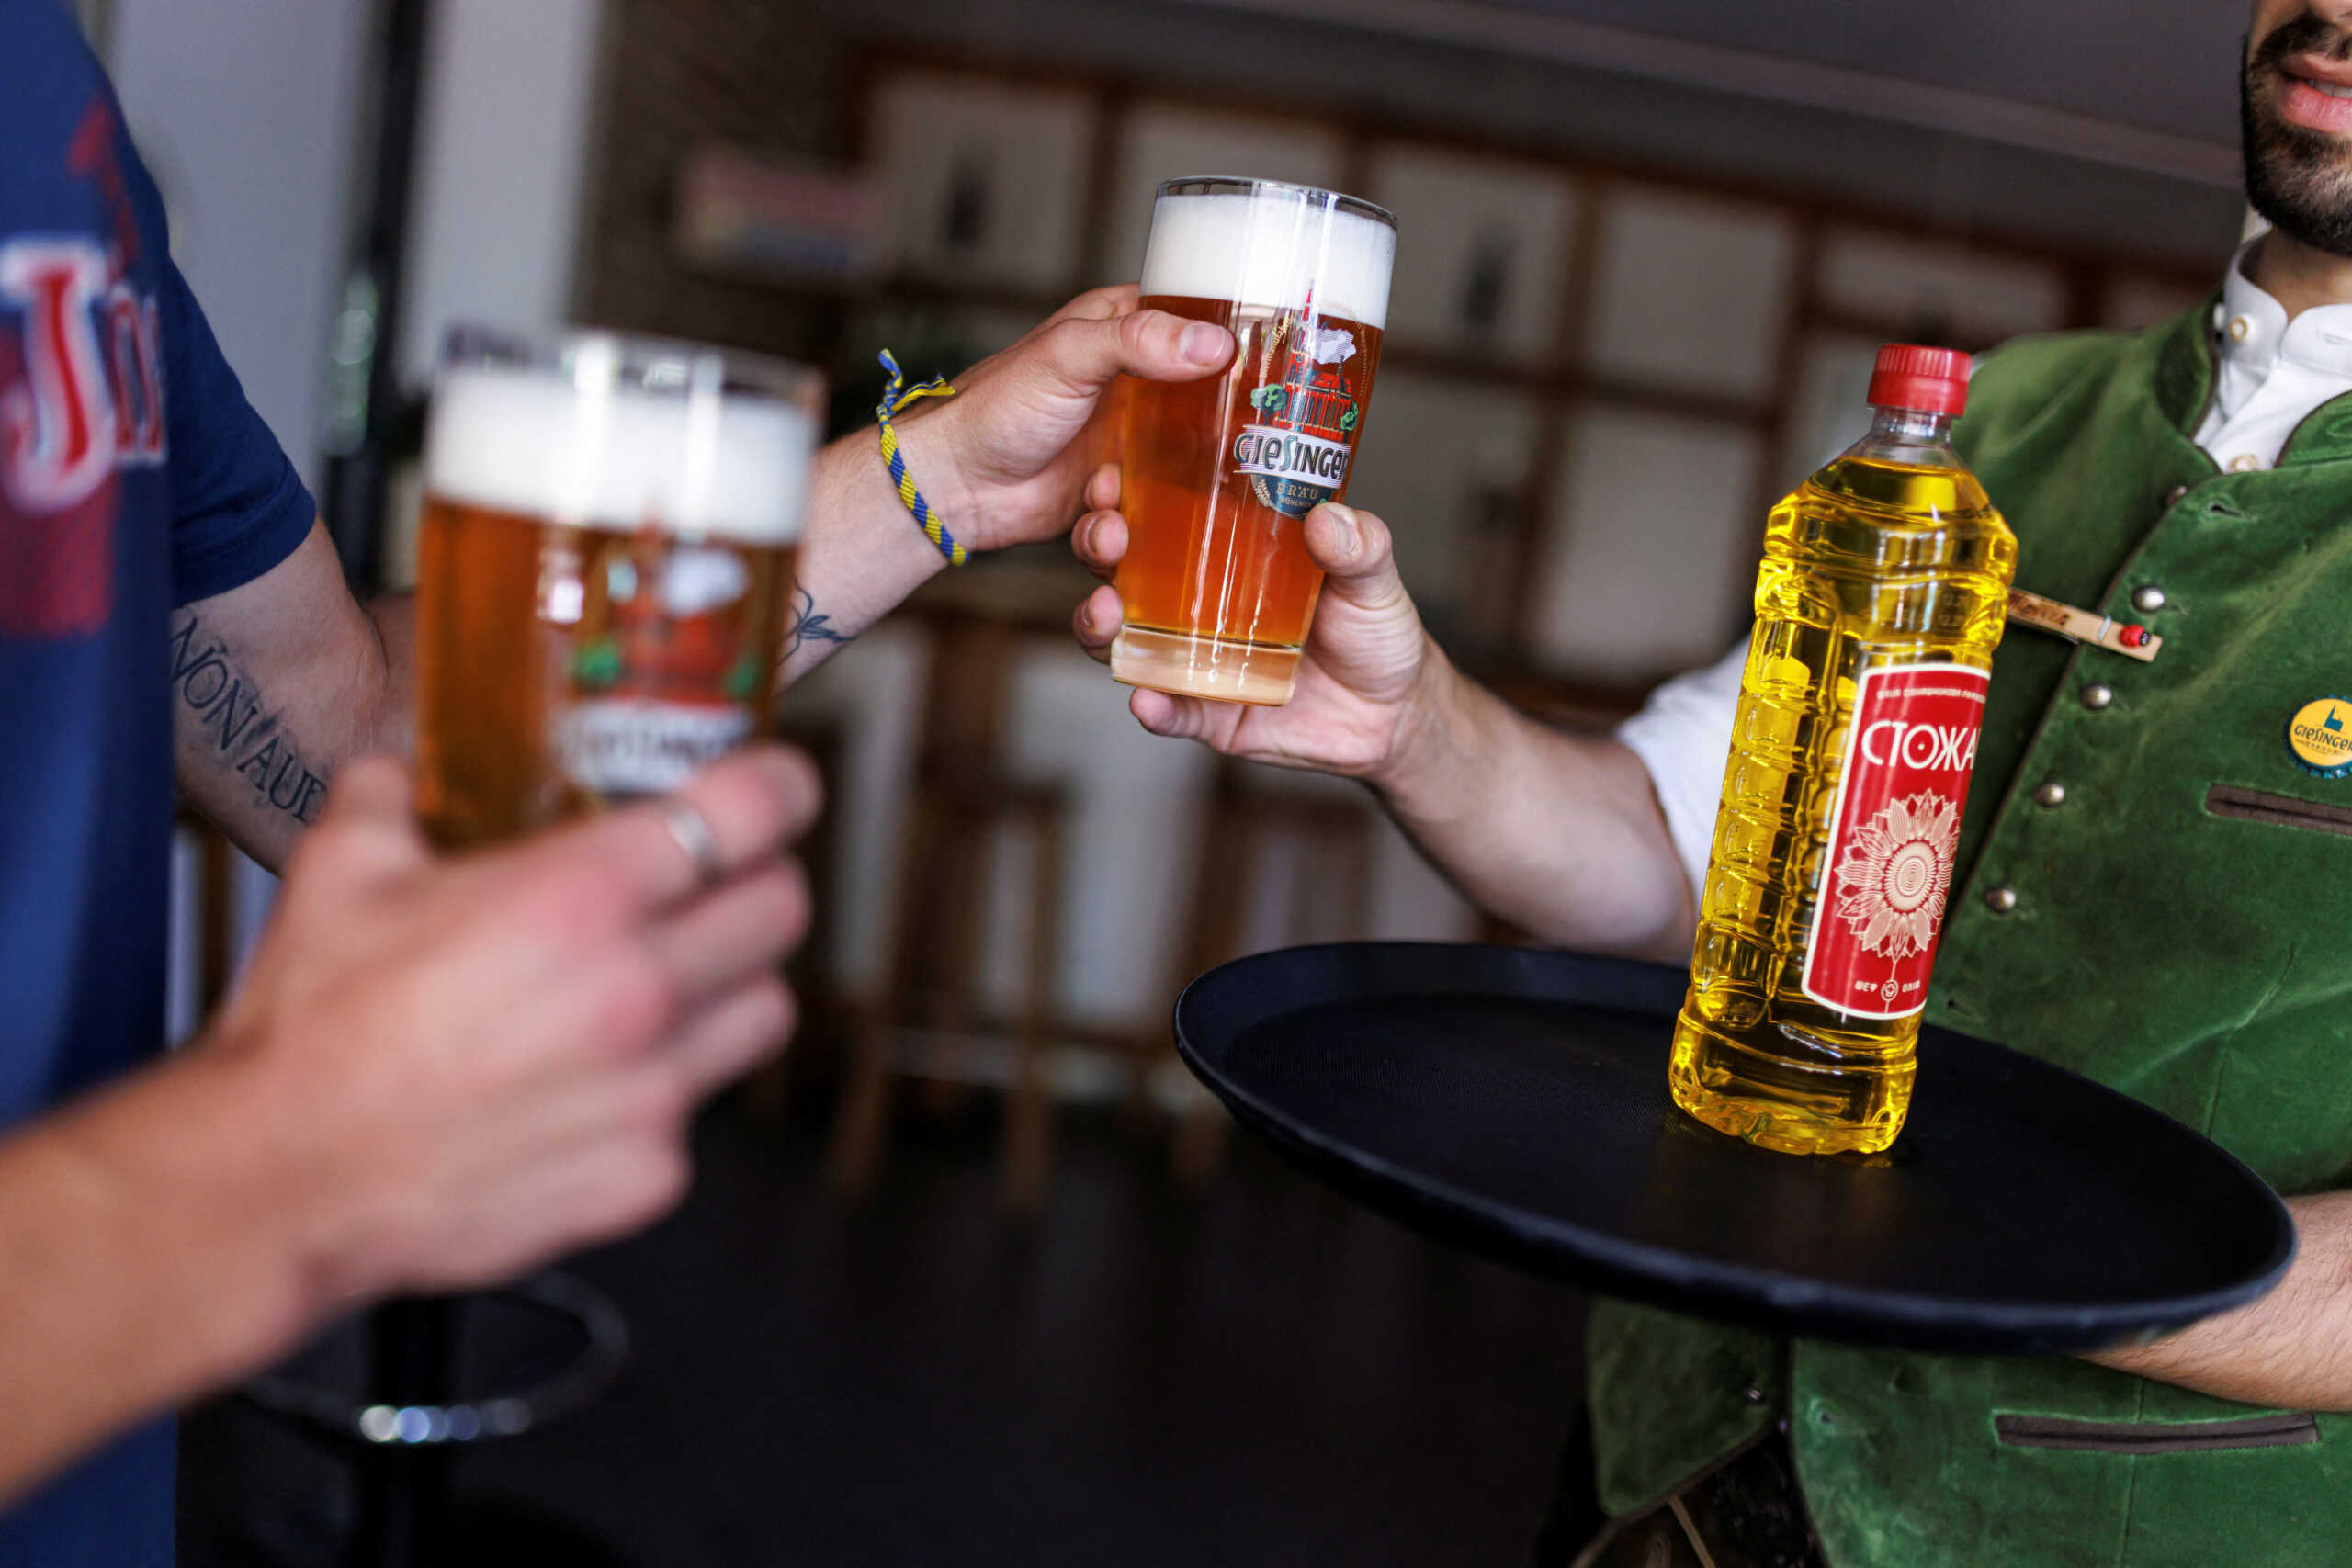 Γερμανία: Μπυραρία στο Μόναχο χρεώνει 1 λίτρο μπύρα για 1 λίτρο ηλιέλαιο - ΠΕΡΙΕΡΓΑ